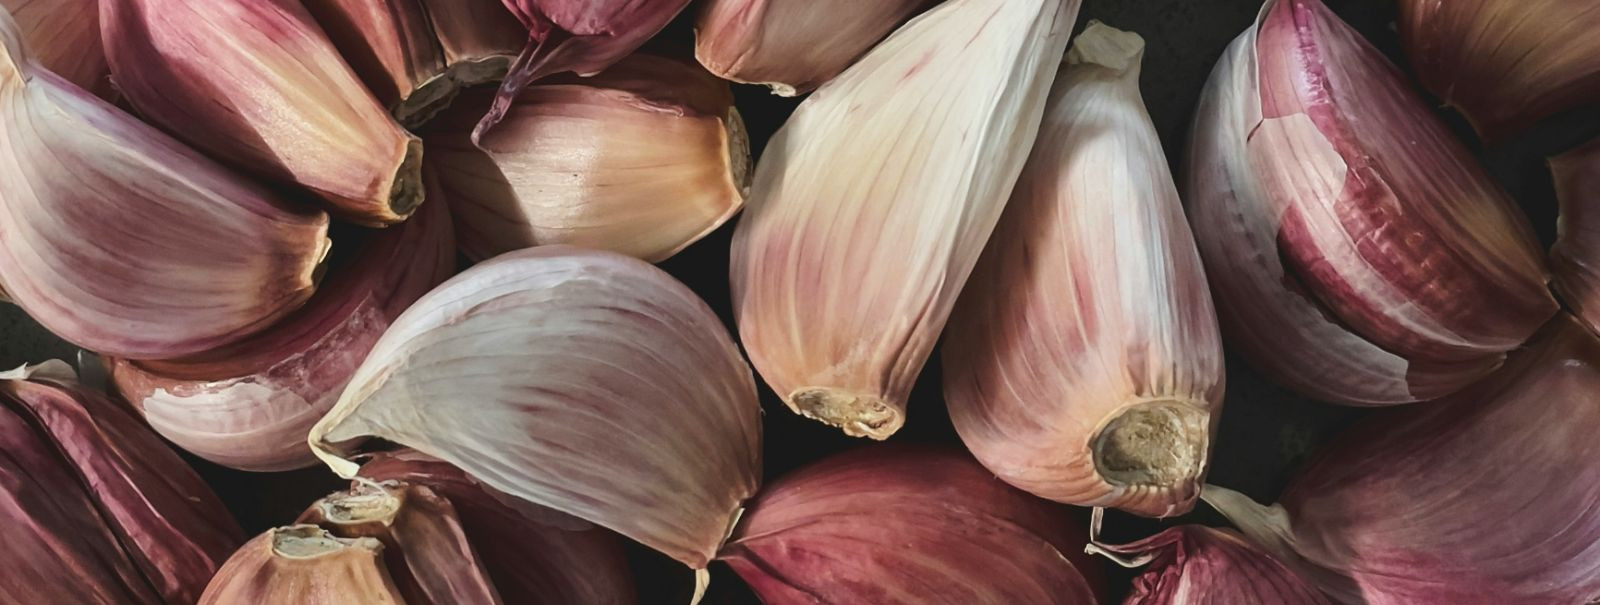 Küüslauk, teaduslikult tuntud kui Allium sativum, on rohkem kui lihtsalt põhikoostisosa maailma köökides; sellel on tuhandete aastate pikkune ajalugu. Vana tsiv